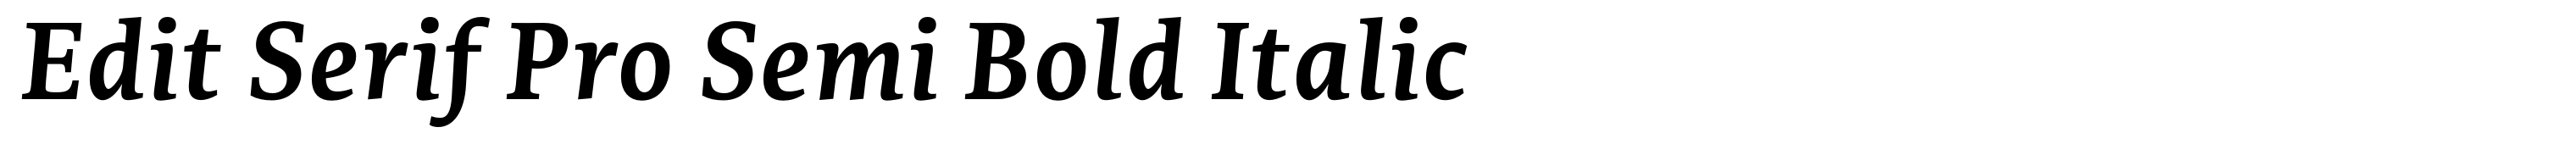 Edit Serif Pro Semi Bold Italic